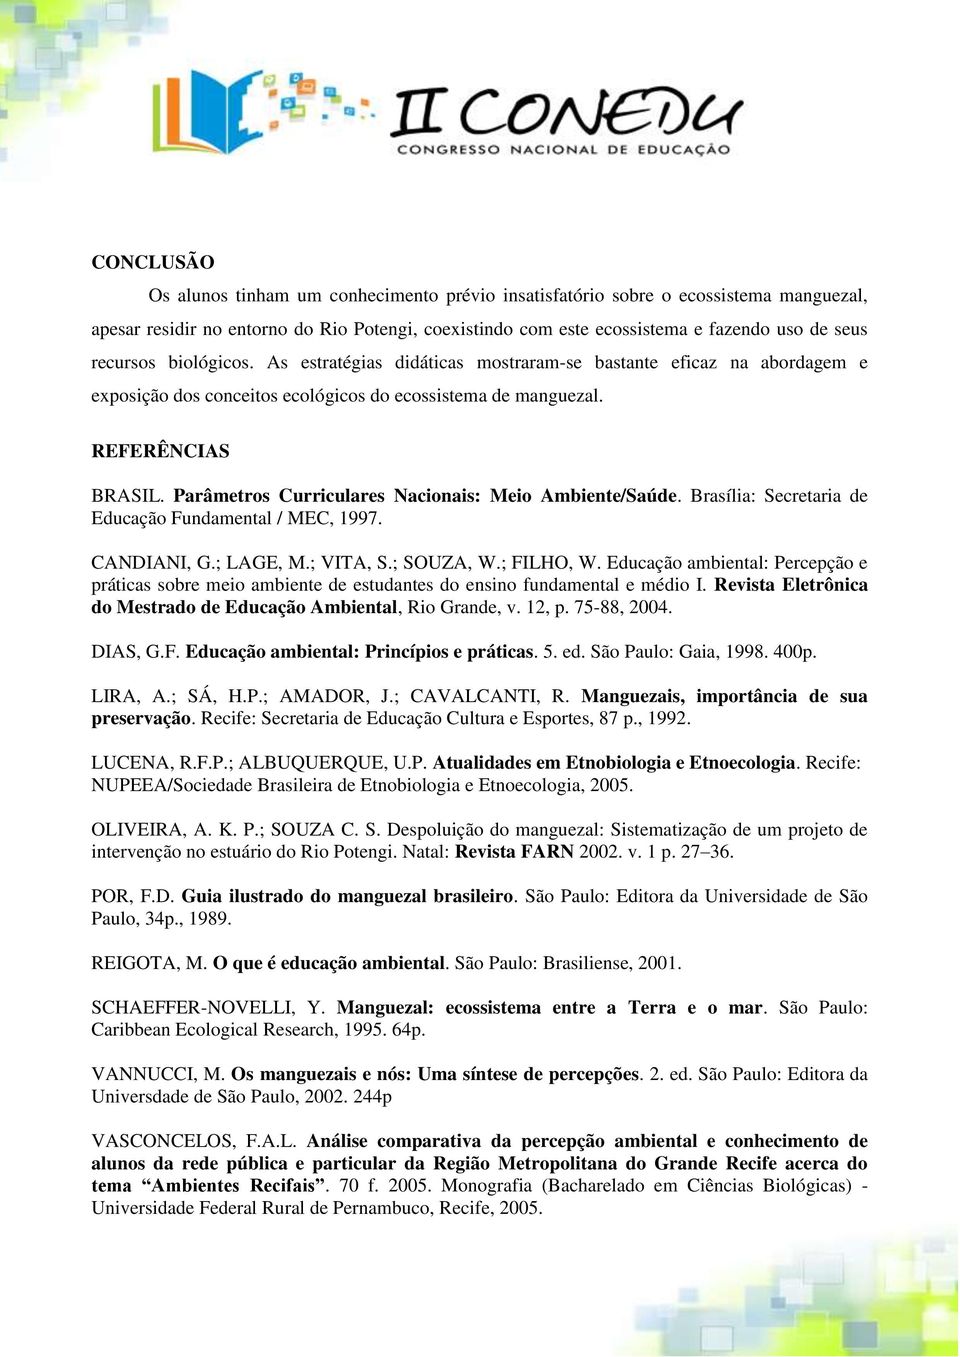 Parâmetros Curriculares Nacionais: Meio Ambiente/Saúde. Brasília: Secretaria de Educação Fundamental / MEC, 1997. CANDIANI, G.; LAGE, M.; VITA, S.; SOUZA, W.; FILHO, W.